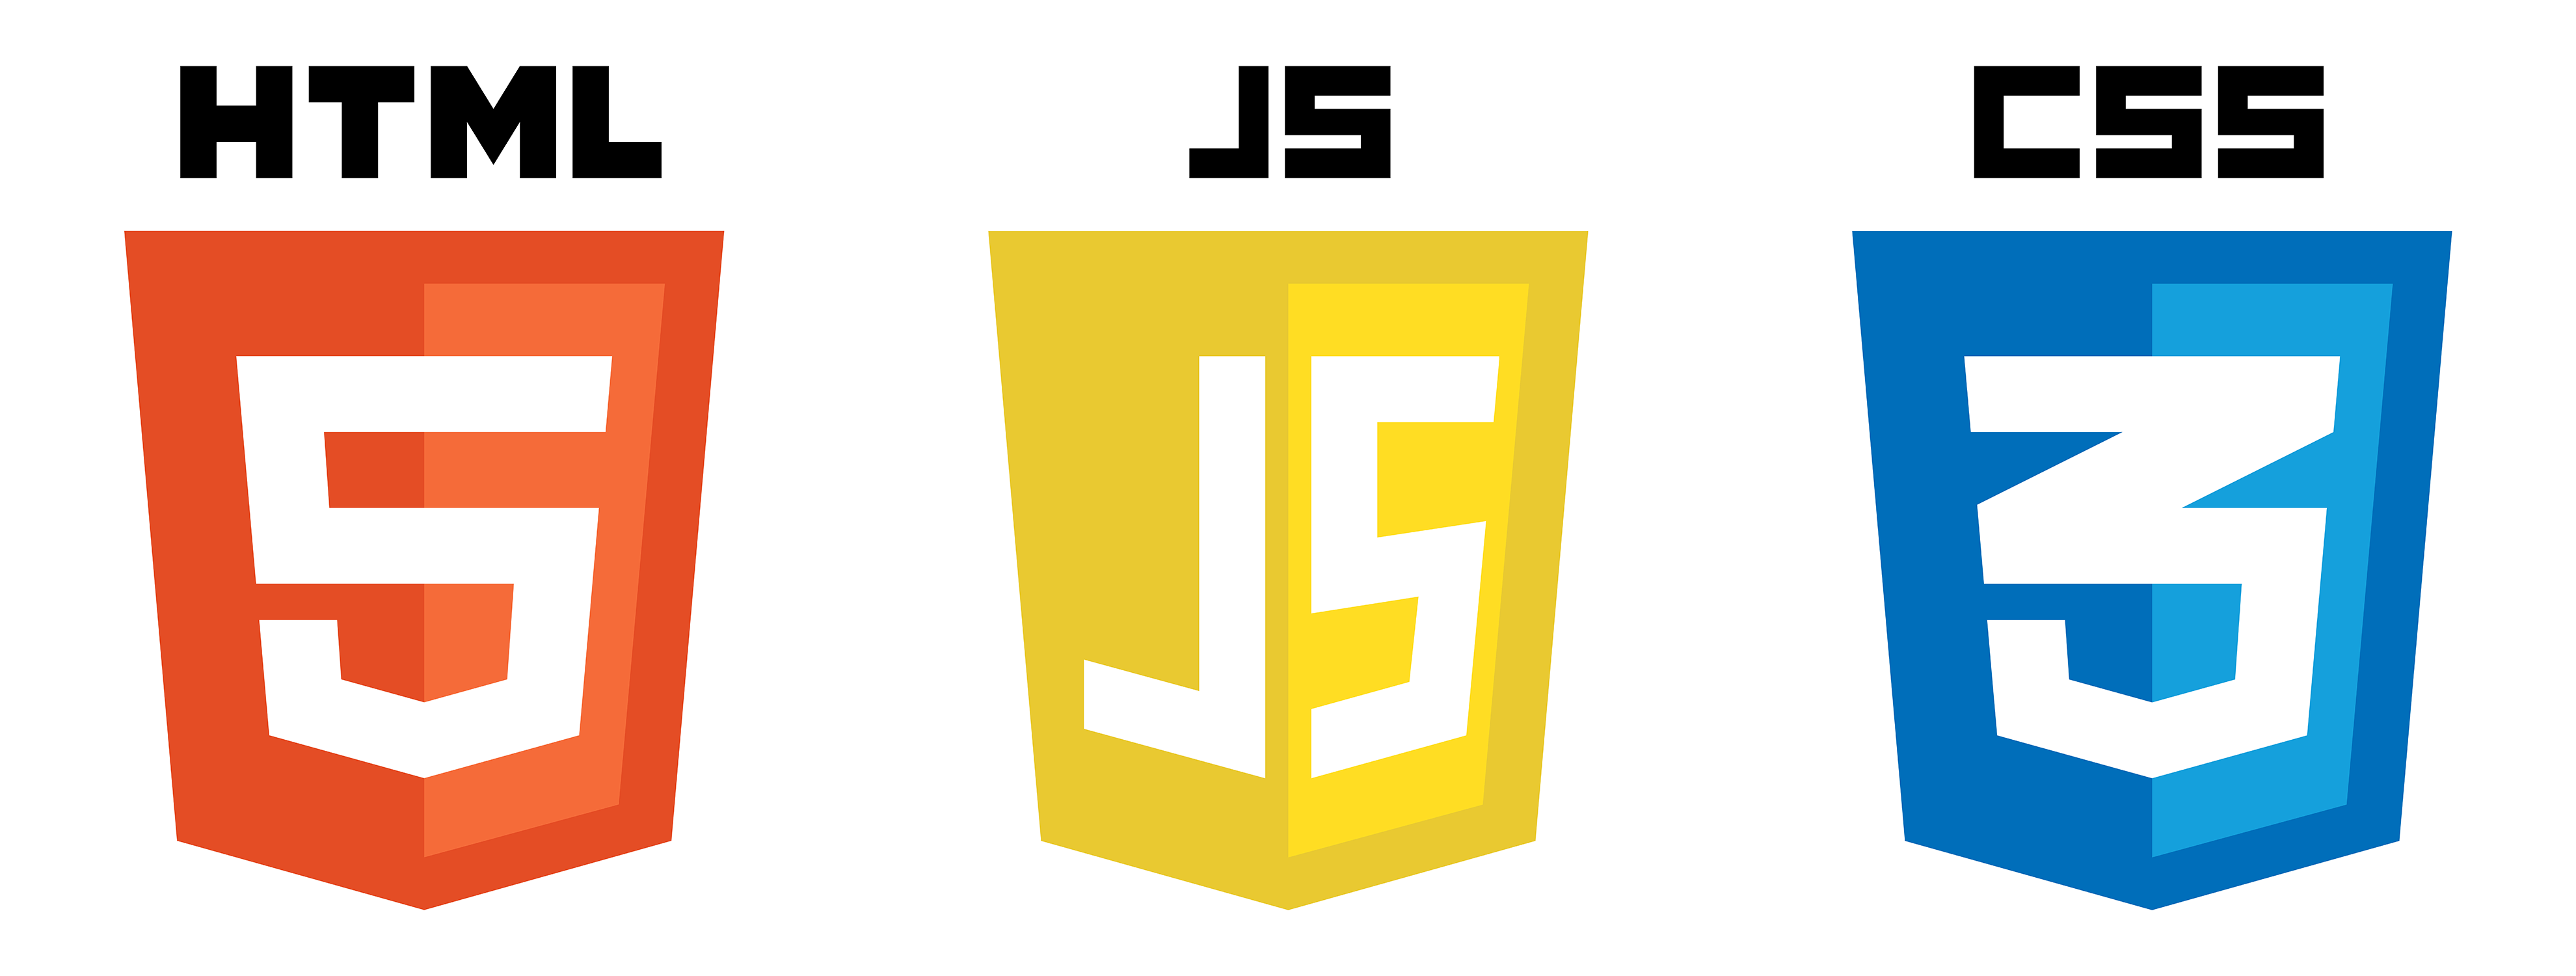 HTML, JS, CSS logos